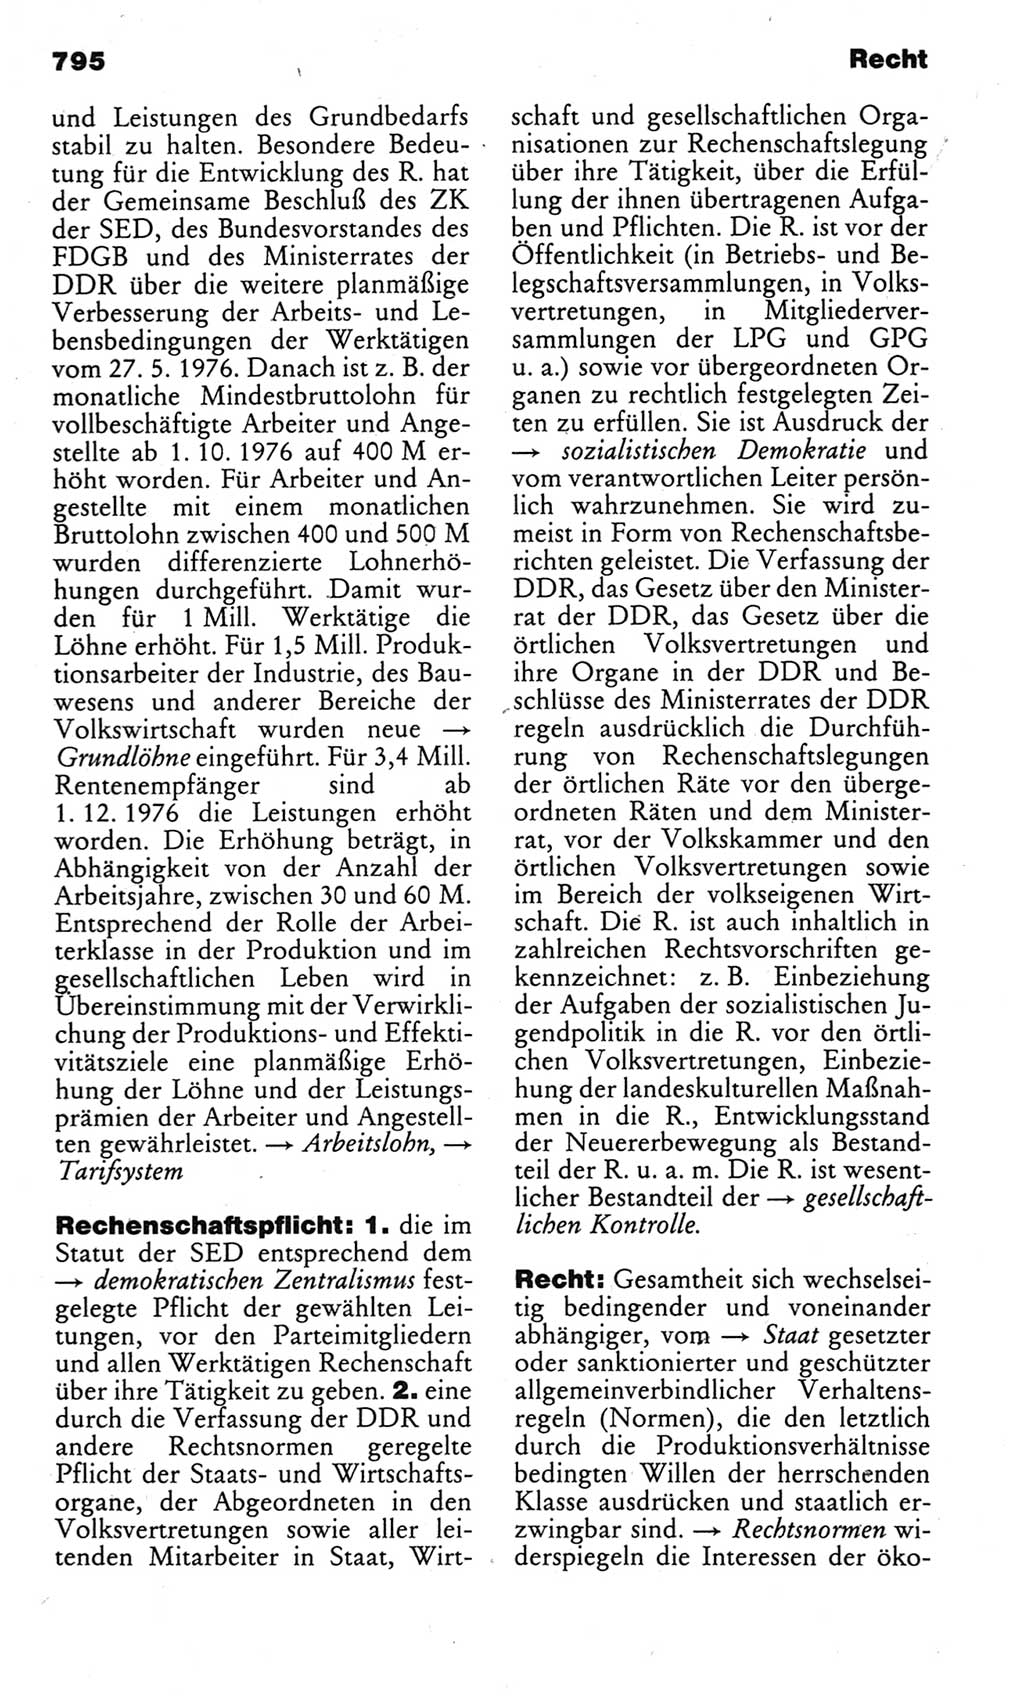 Kleines politisches Wörterbuch [Deutsche Demokratische Republik (DDR)] 1983, Seite 795 (Kl. pol. Wb. DDR 1983, S. 795)